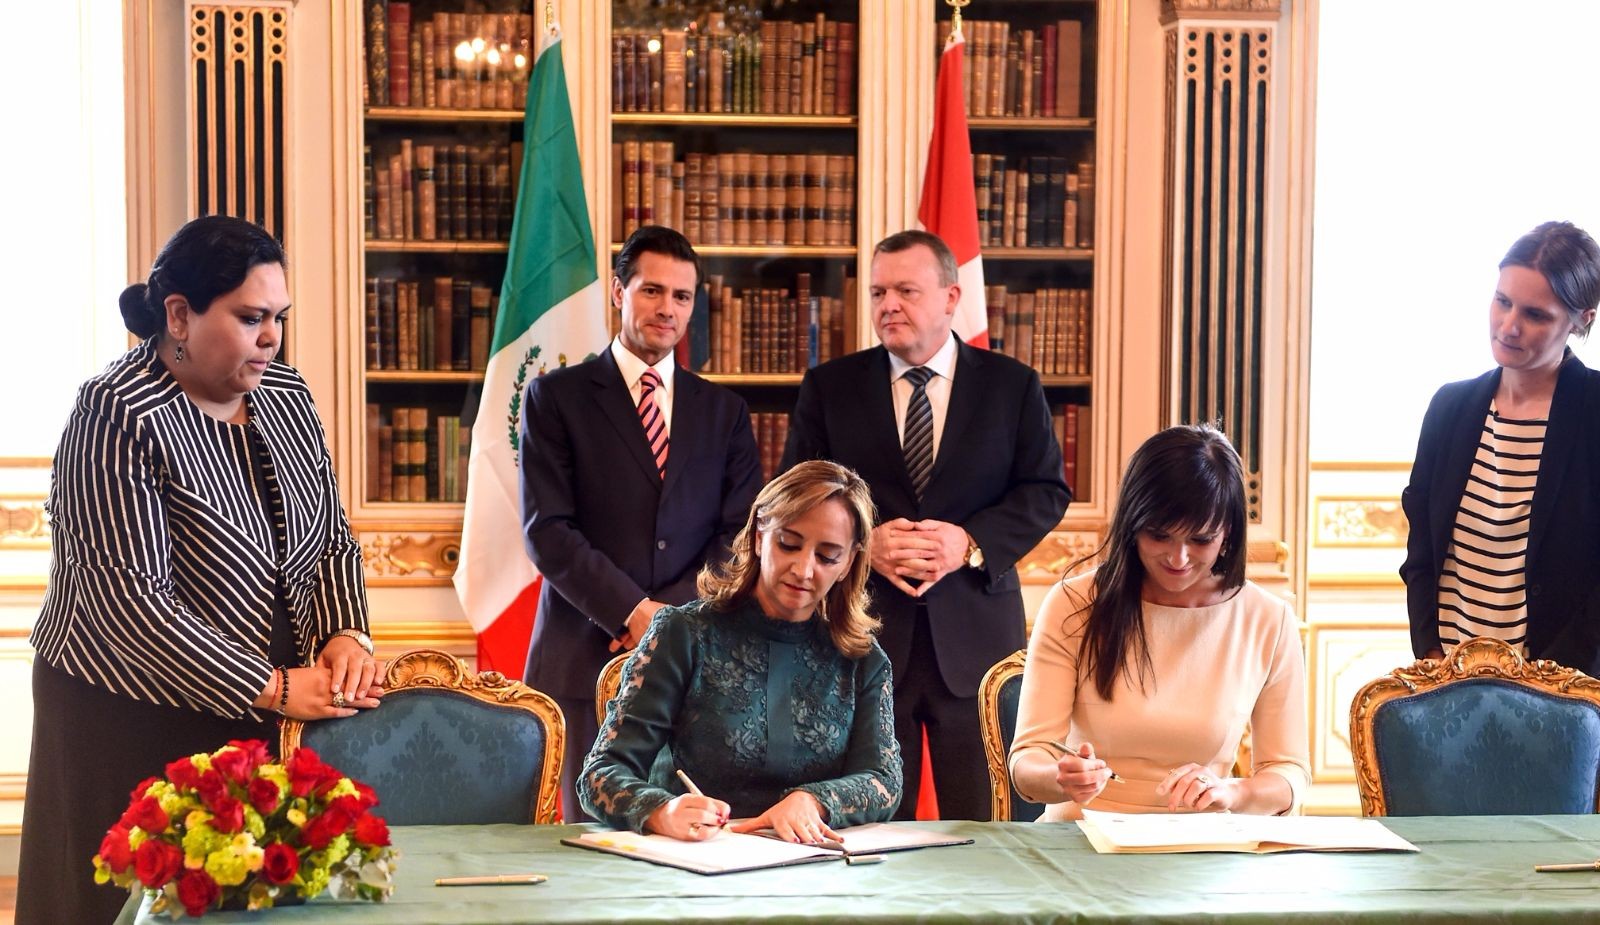 Acuerdo de Cooperación sobre Capacitación en diabetes para Personal del Sector de Atención Primaria en México, entre la Secretaría de Salud de los Estados Unidos Mexicanos, la Universidad de Copenhague y el Hospital Universitario de Odense del Reino de Dinamarca. 